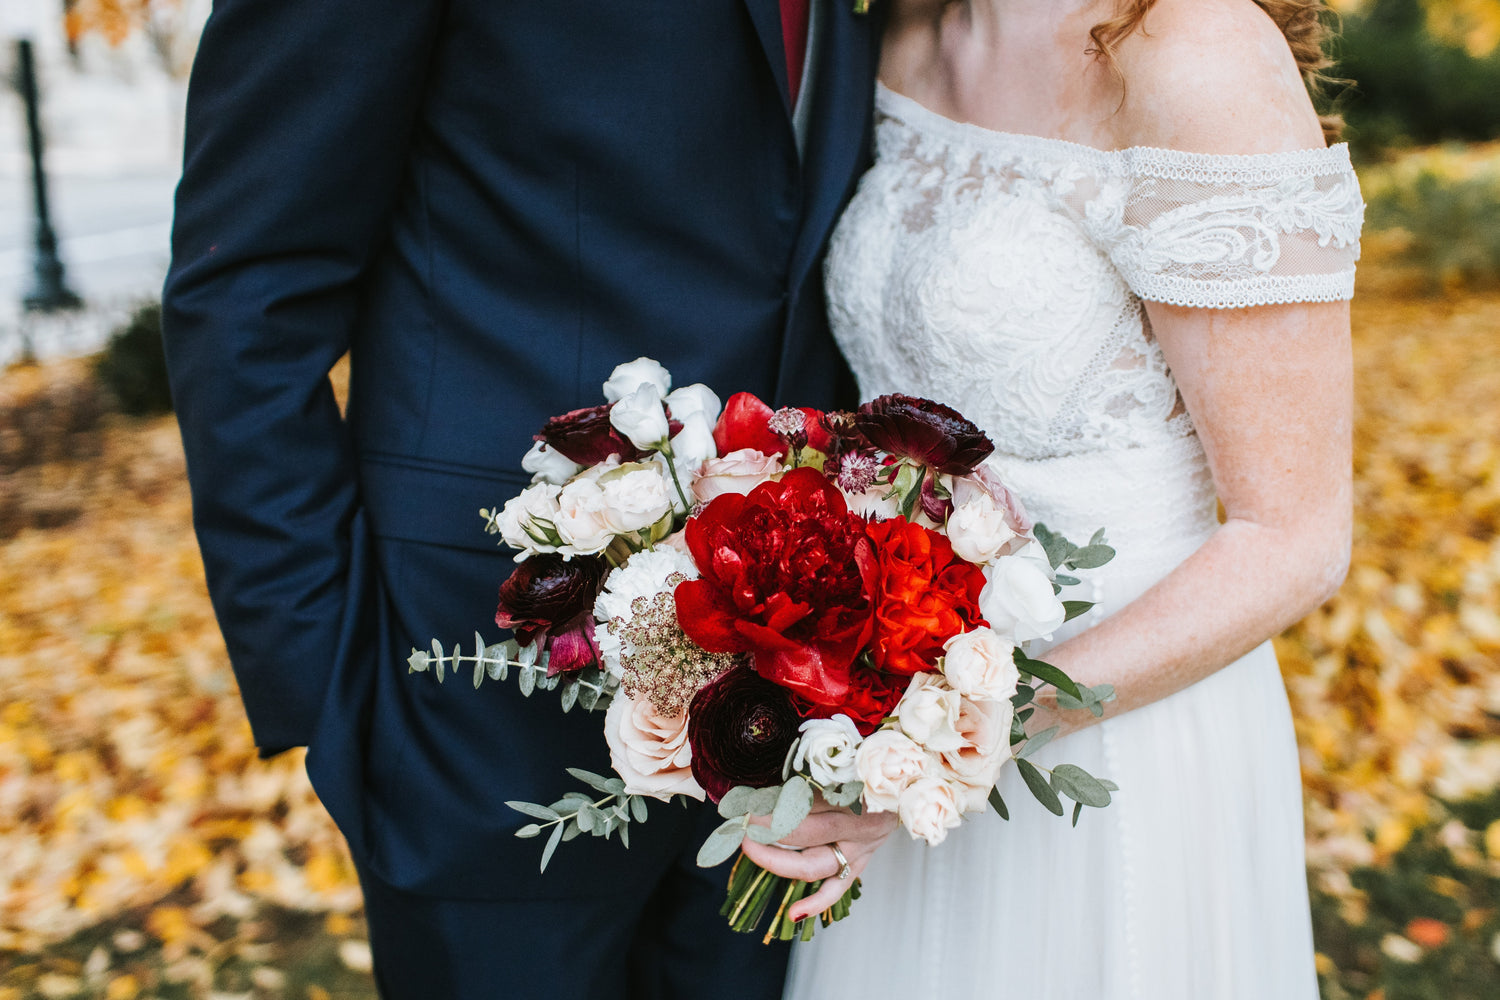 Cincinnati wedding florist specializing in garden style arrangements. Garden inspired bridal bouquets.